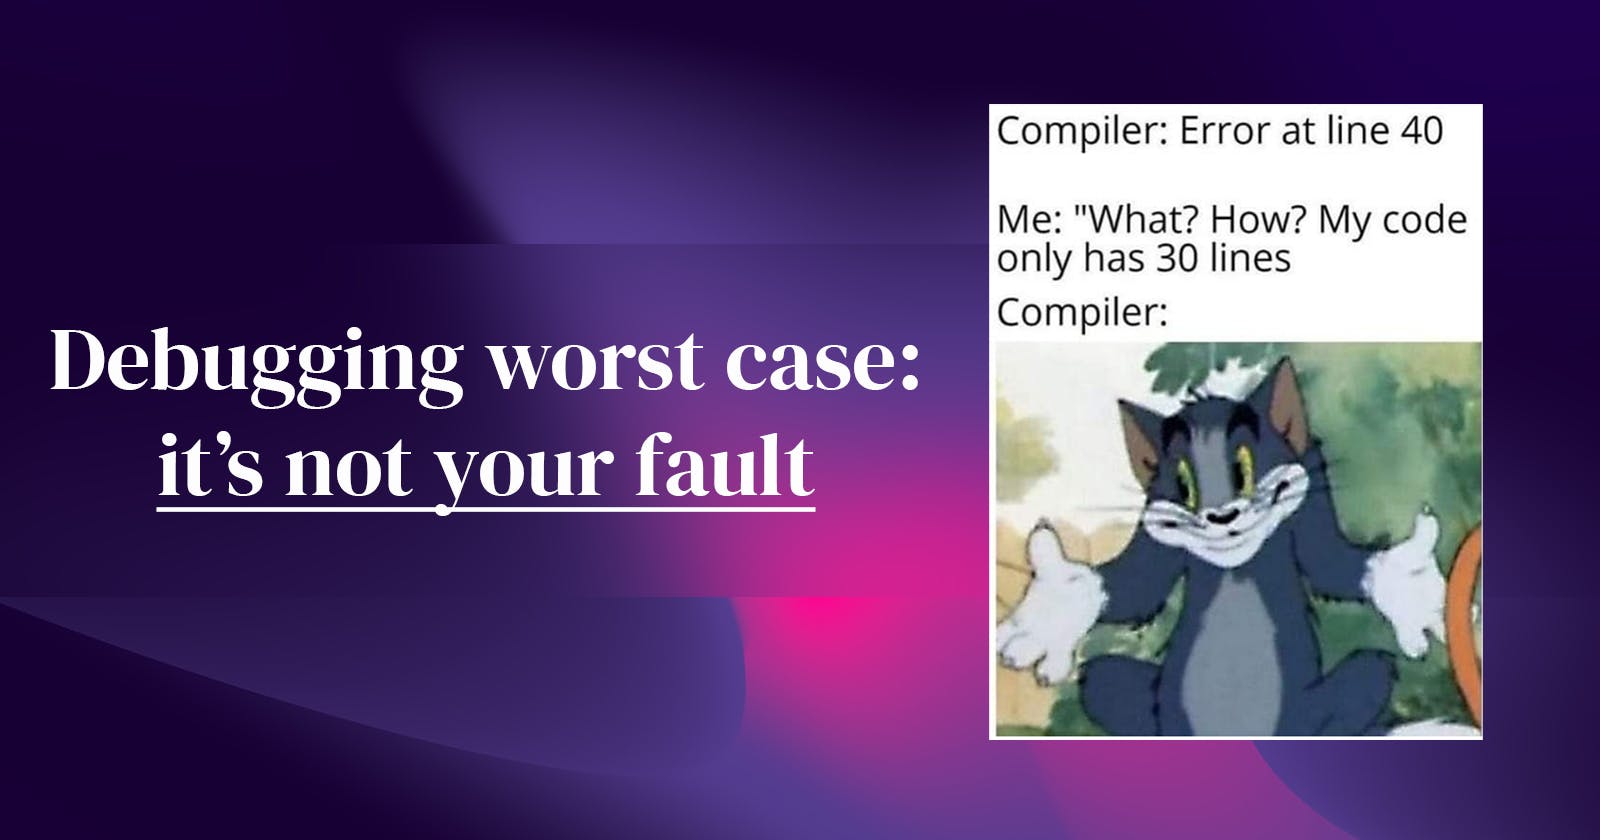 Debugging the worst-case scenario: it's not your fault; & Windows-devs matter! ✊